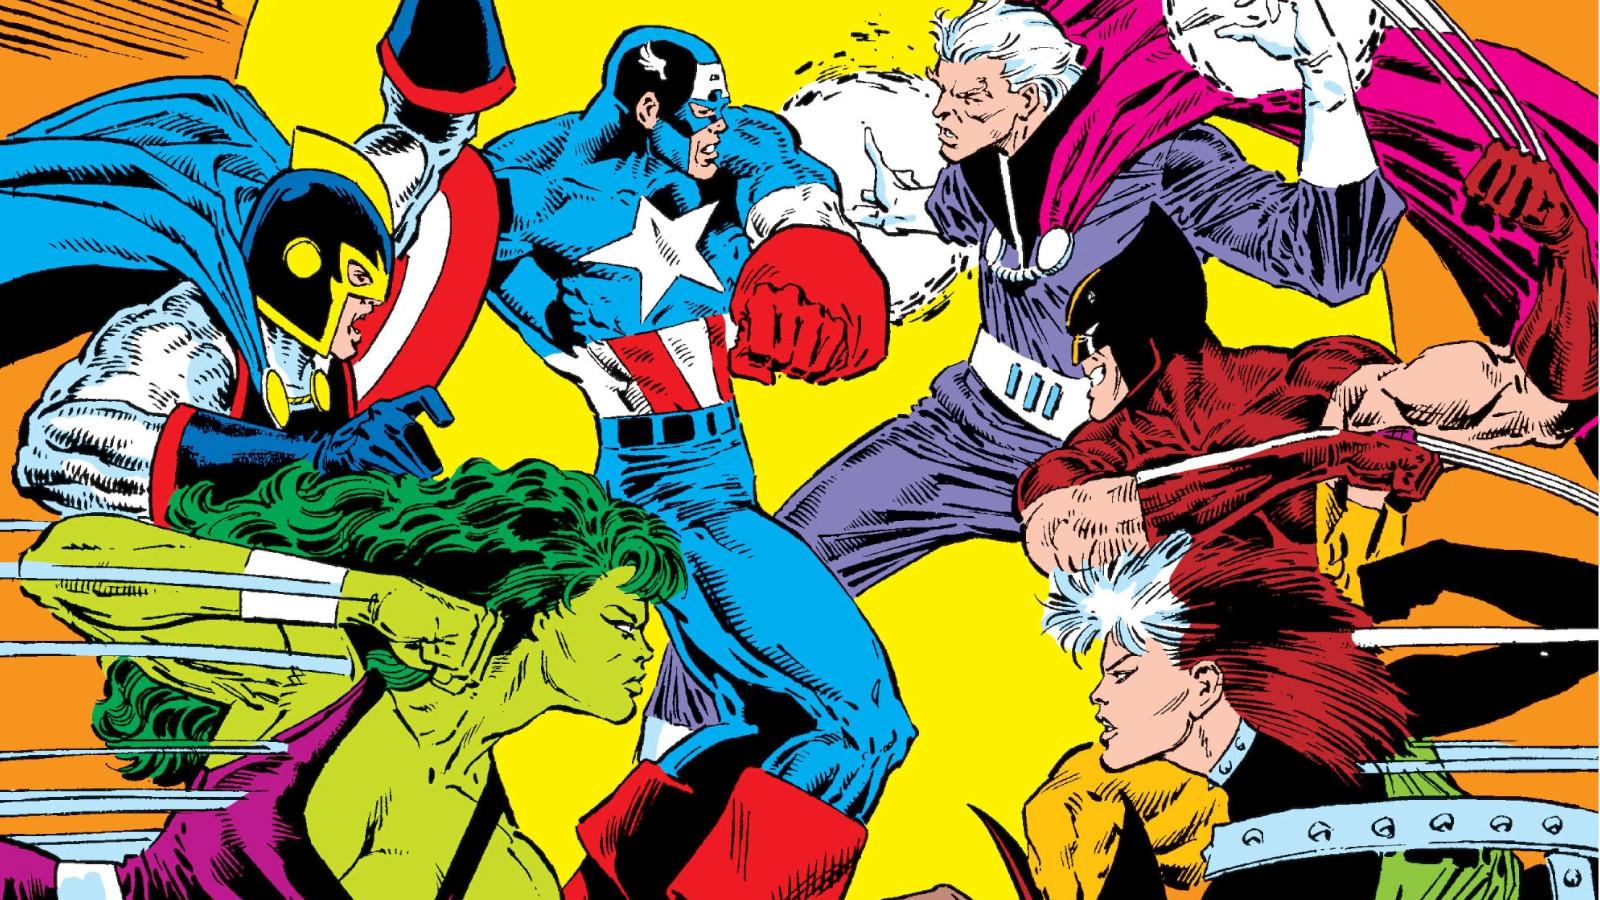 X-Men vs the Avengers cover art